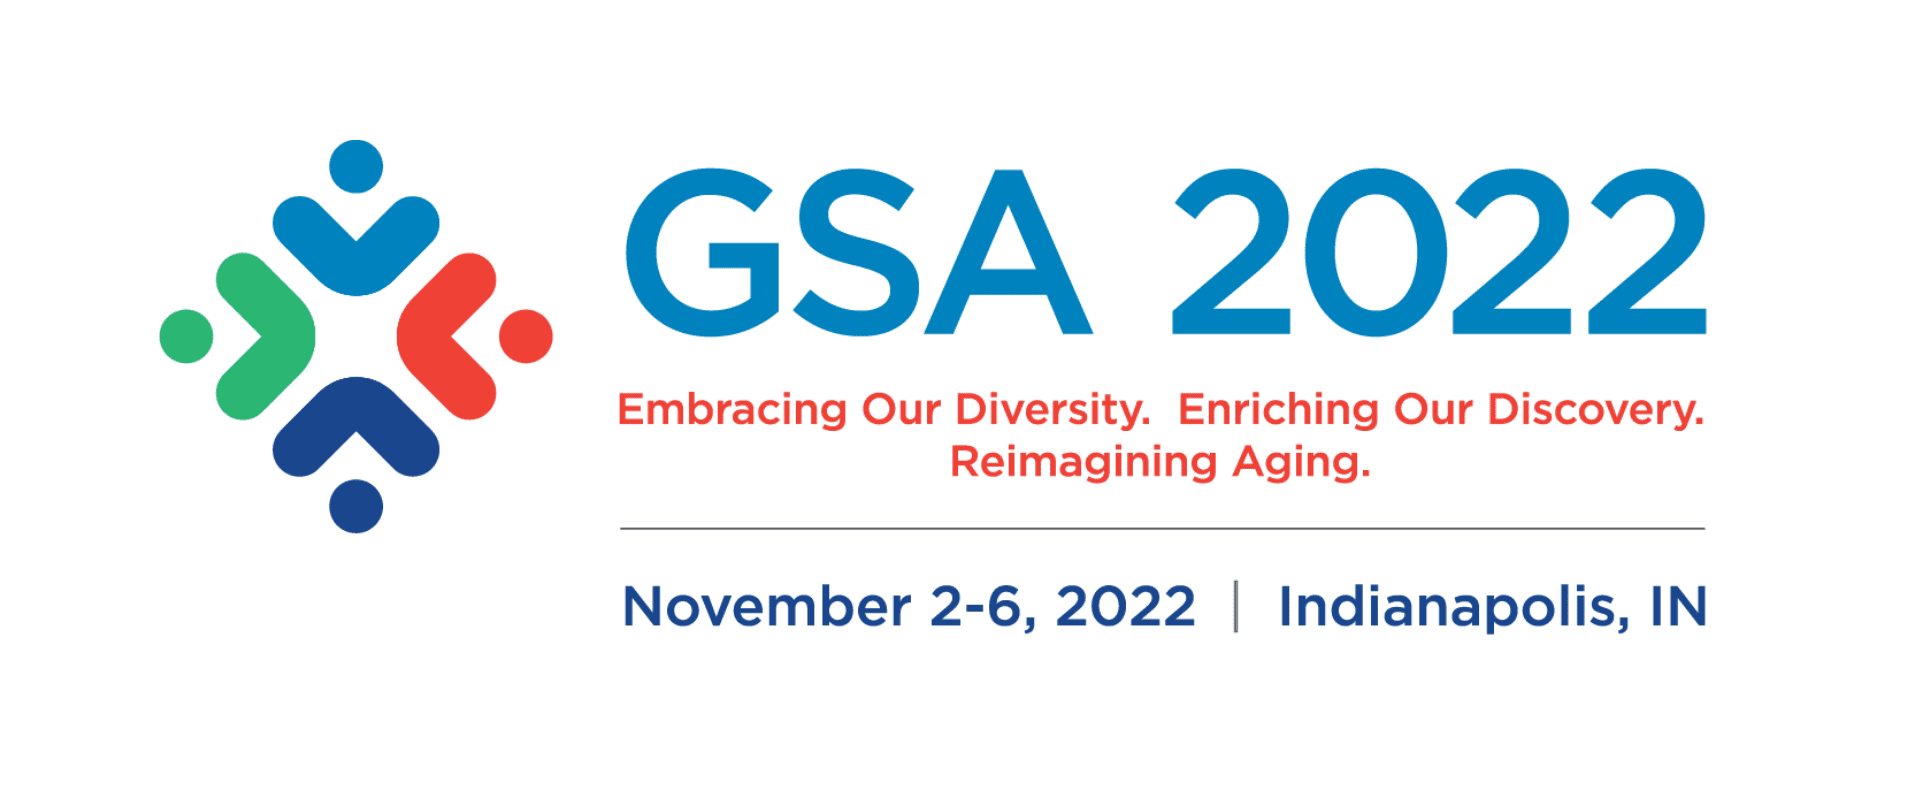 GSA 2022 event logo